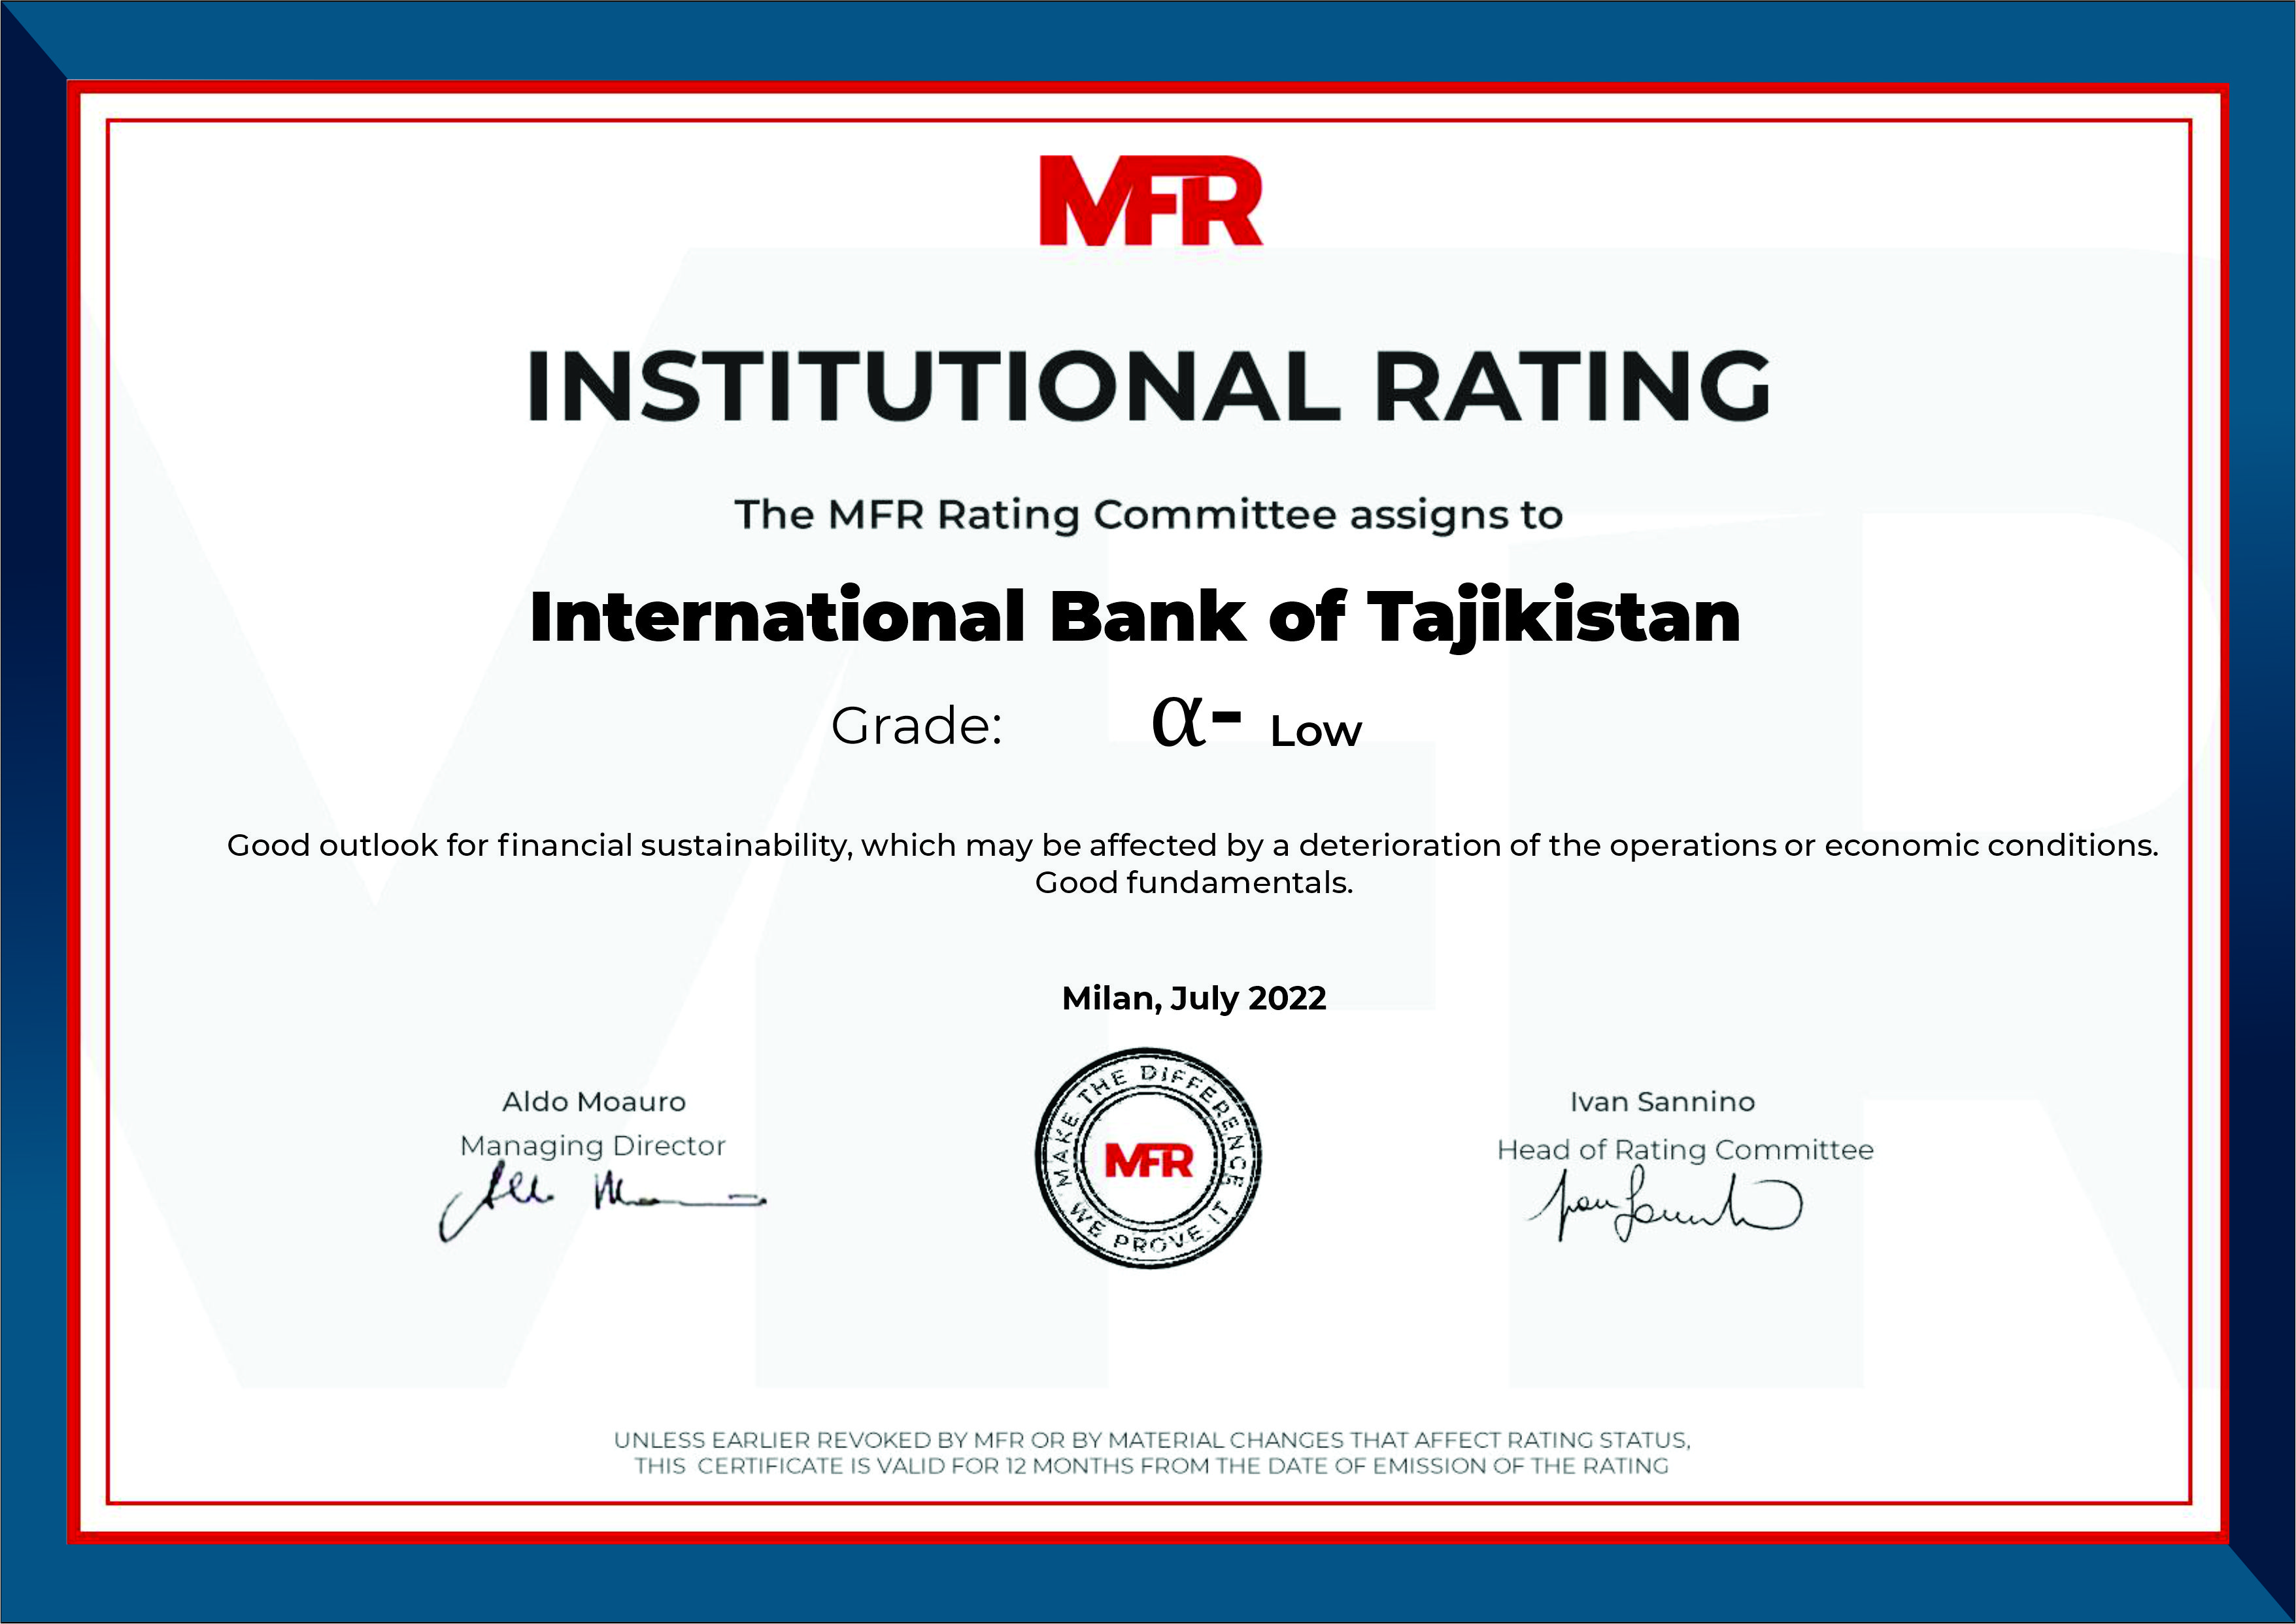 Международный банк Таджикистана получил институциональный рейтинг от MFR